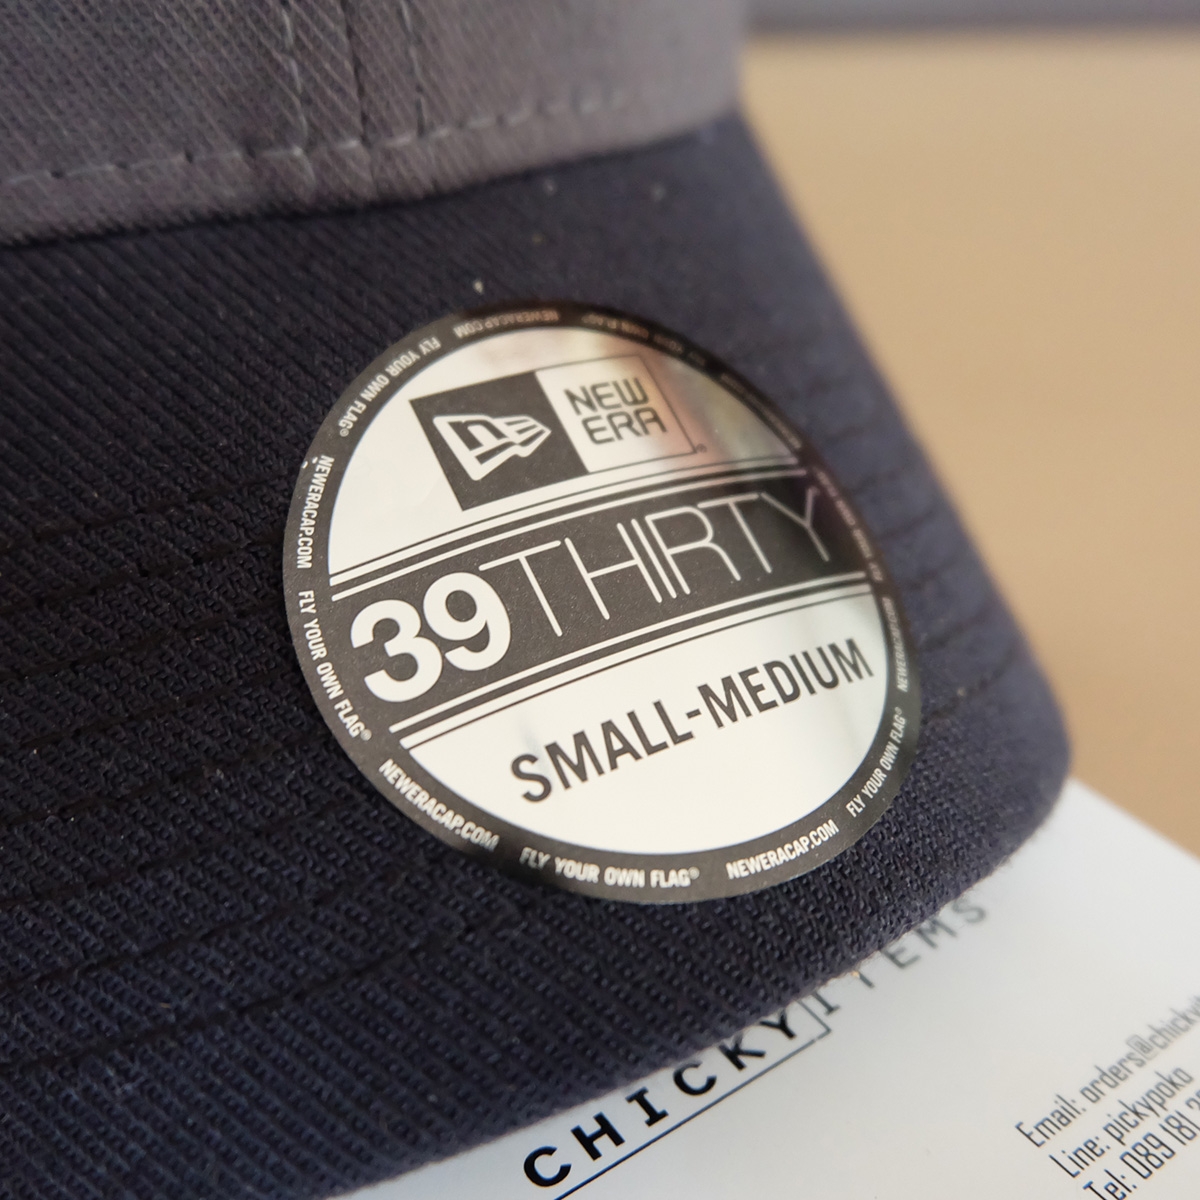 สติกเกอร์ชื่อรุ่น จะบอกว่าเป็นรุ่น 39 THIRTY ตามด้วยขนาดของหมวกค่ะ